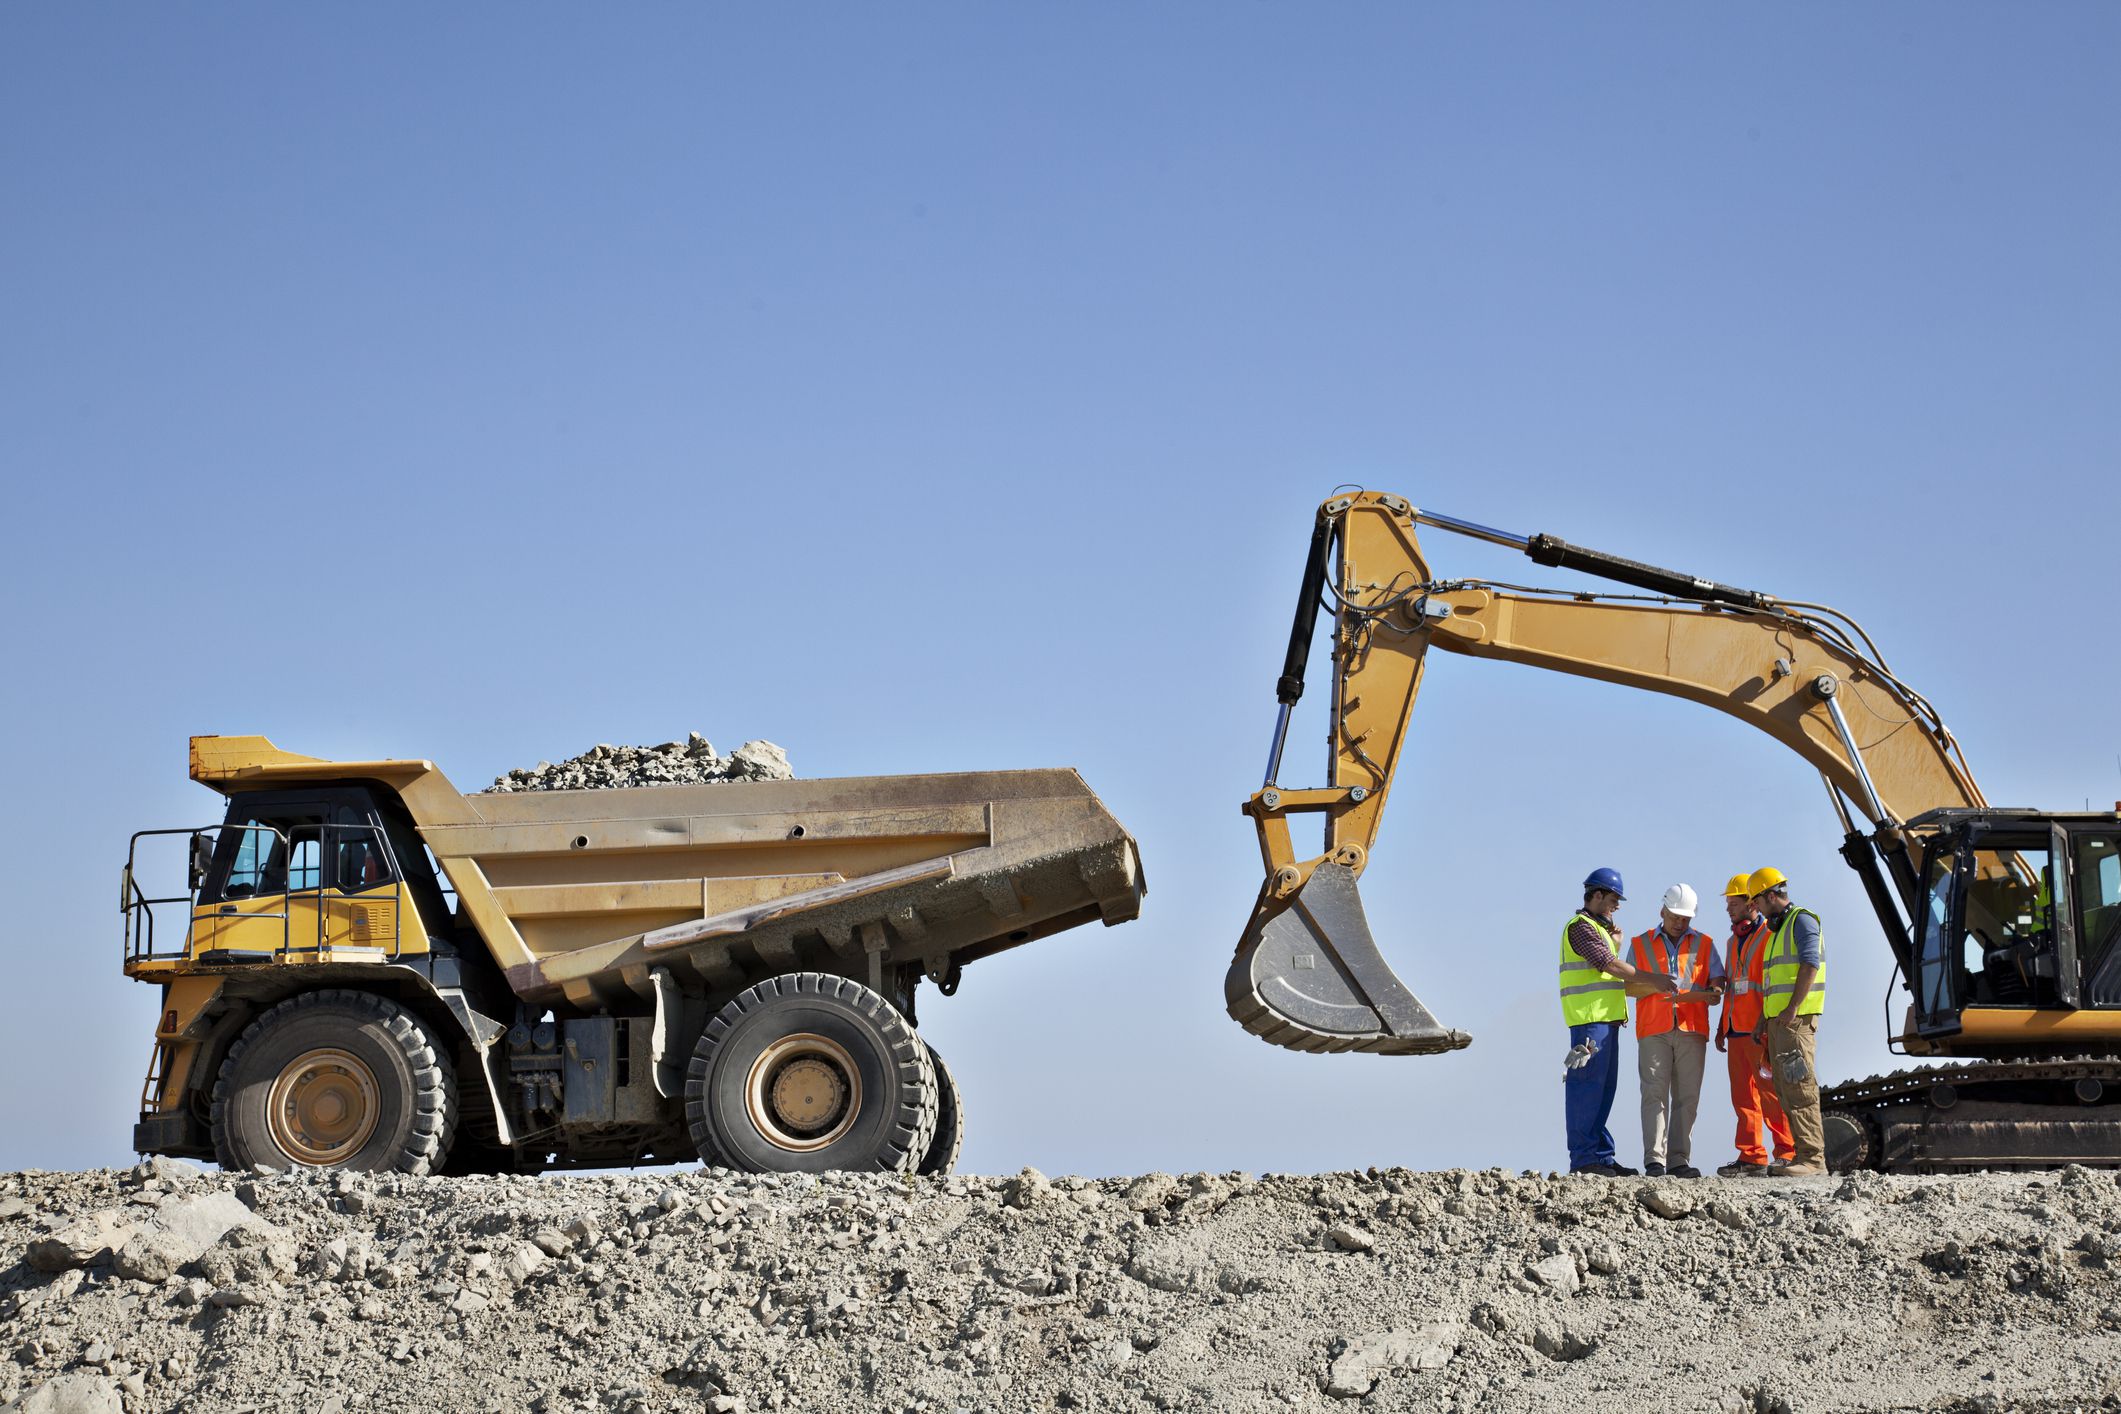 ofertas laborales en sector minero: aplique antes de que cierren la convocatoria